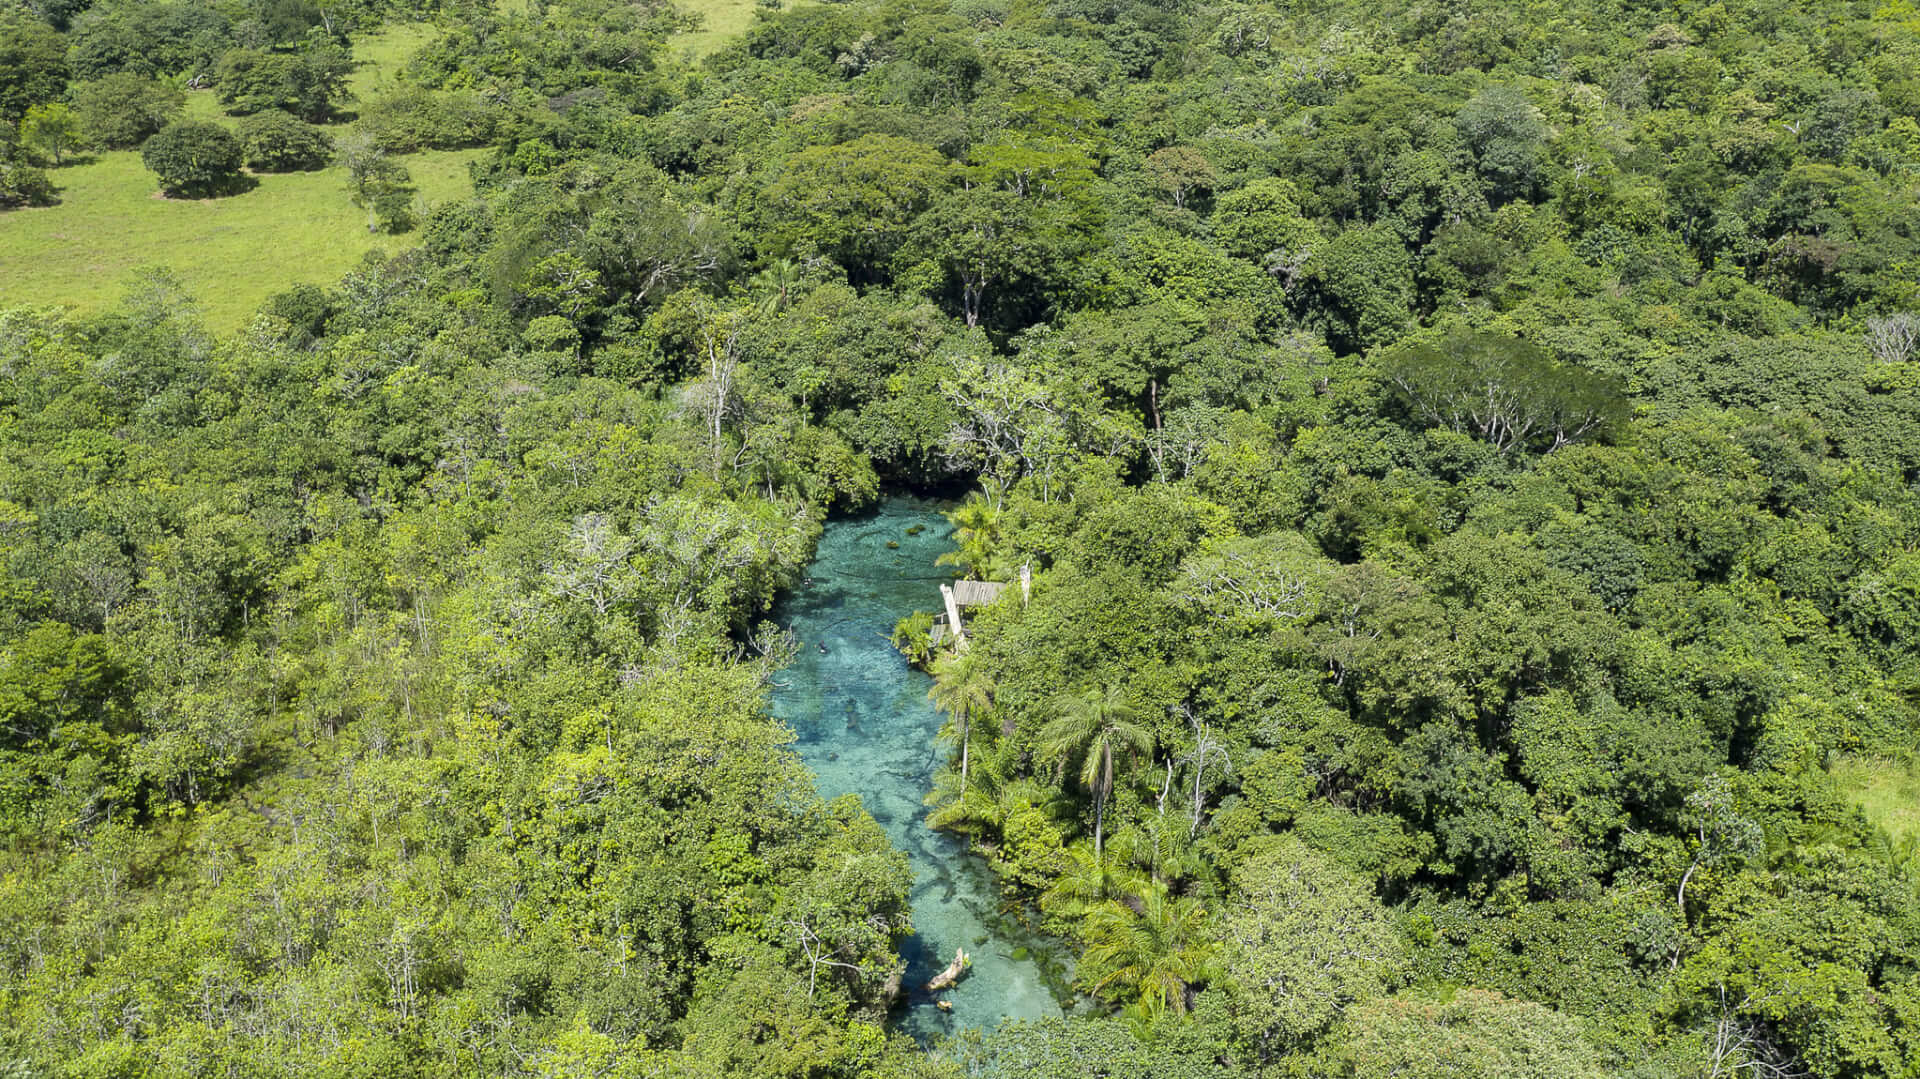 Rio azul passando entre a floresta densa.